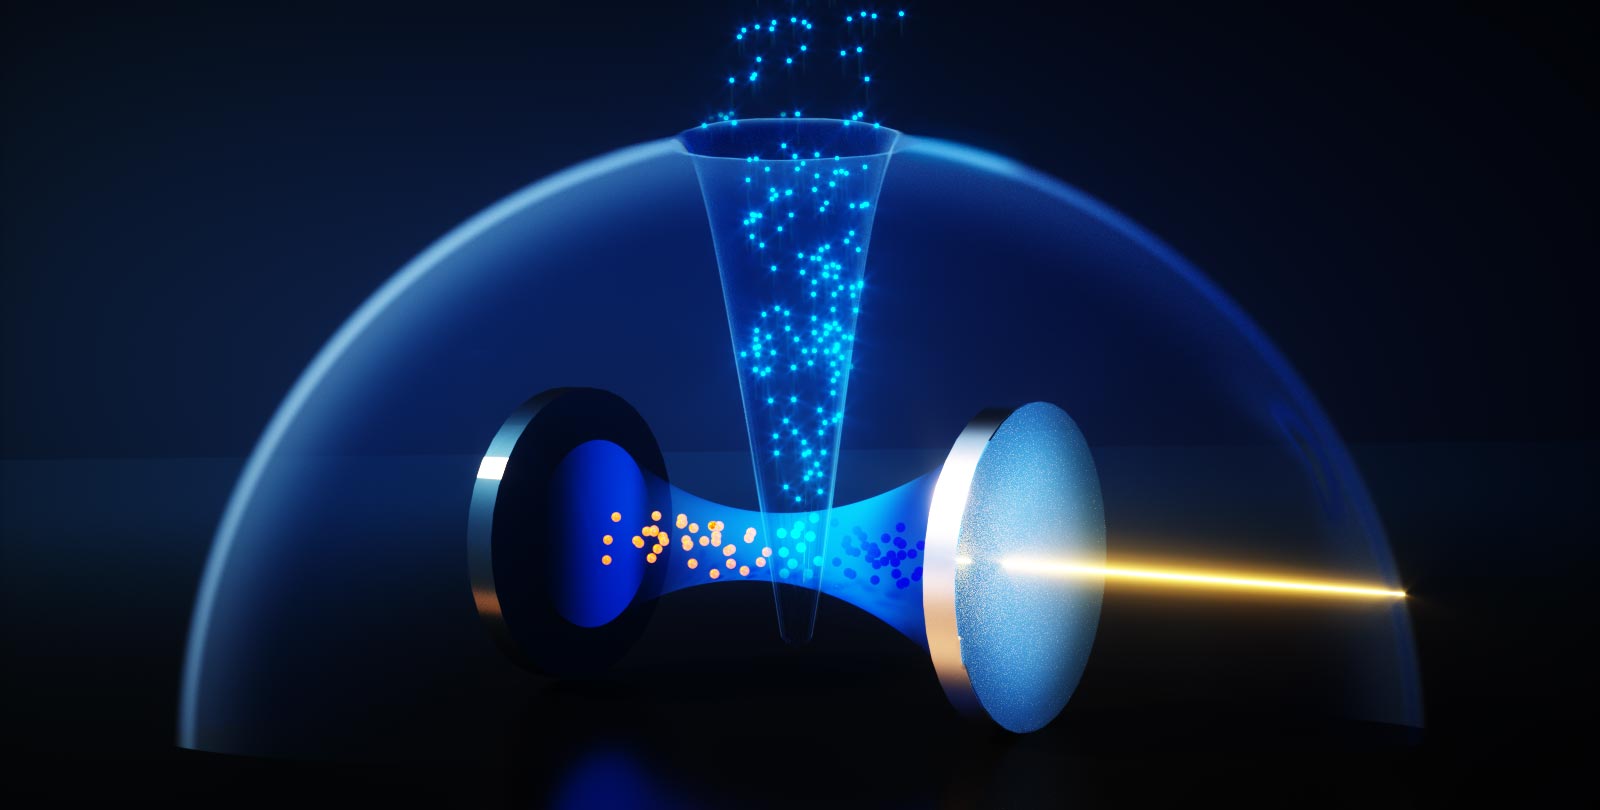 Les atomes deviennent transparents à certaines fréquences de lumière